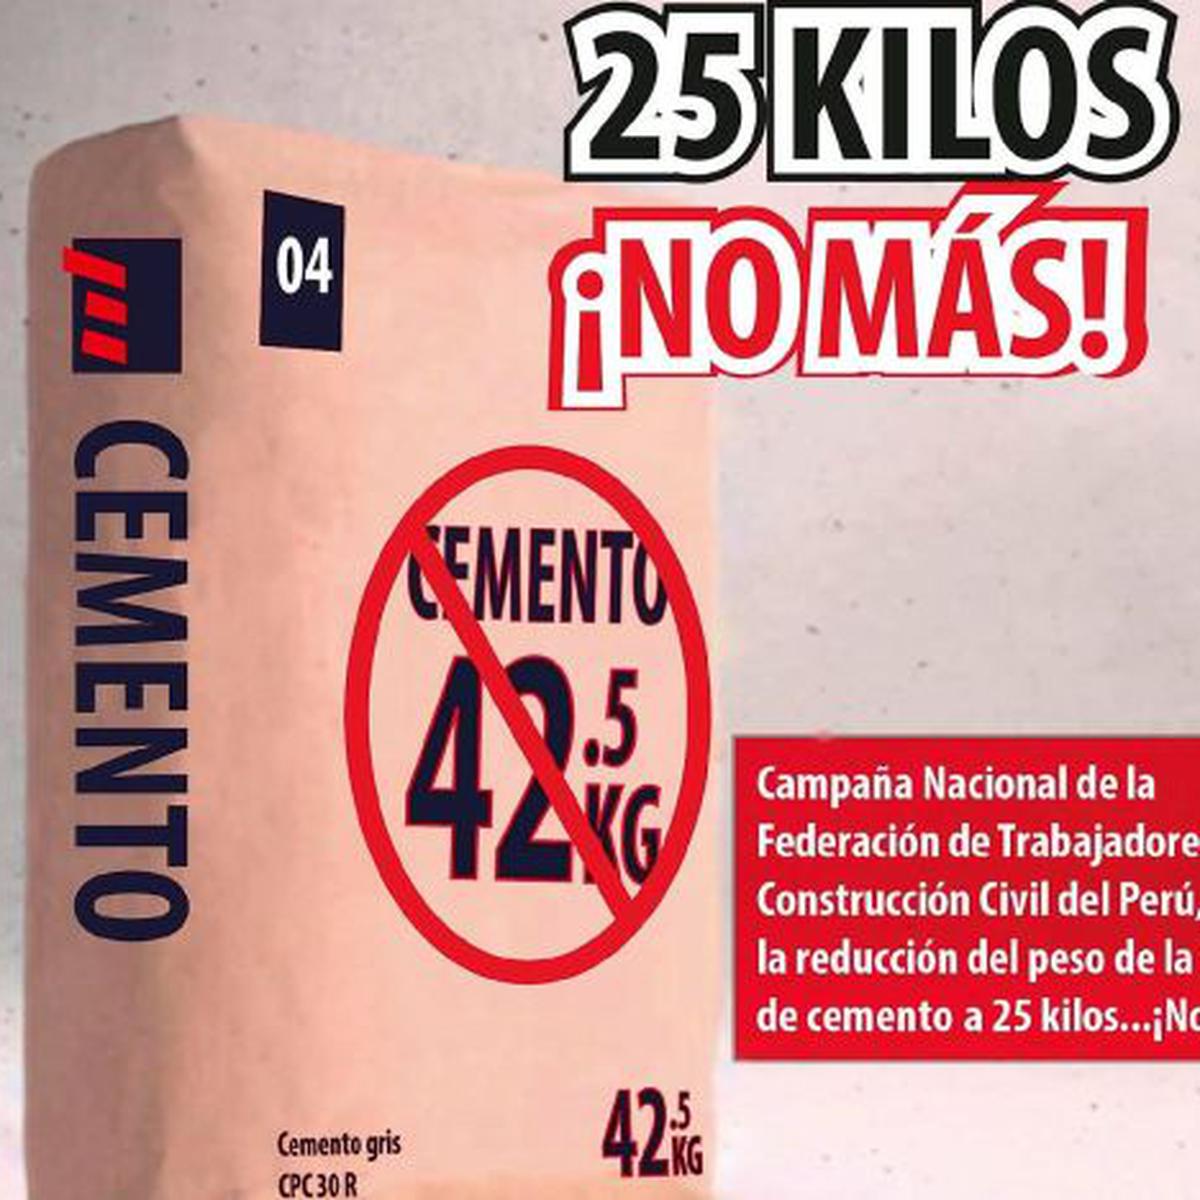 Cuáles Son Las Razones Detrás del Peso de 42.5 Kg del Cemento ...